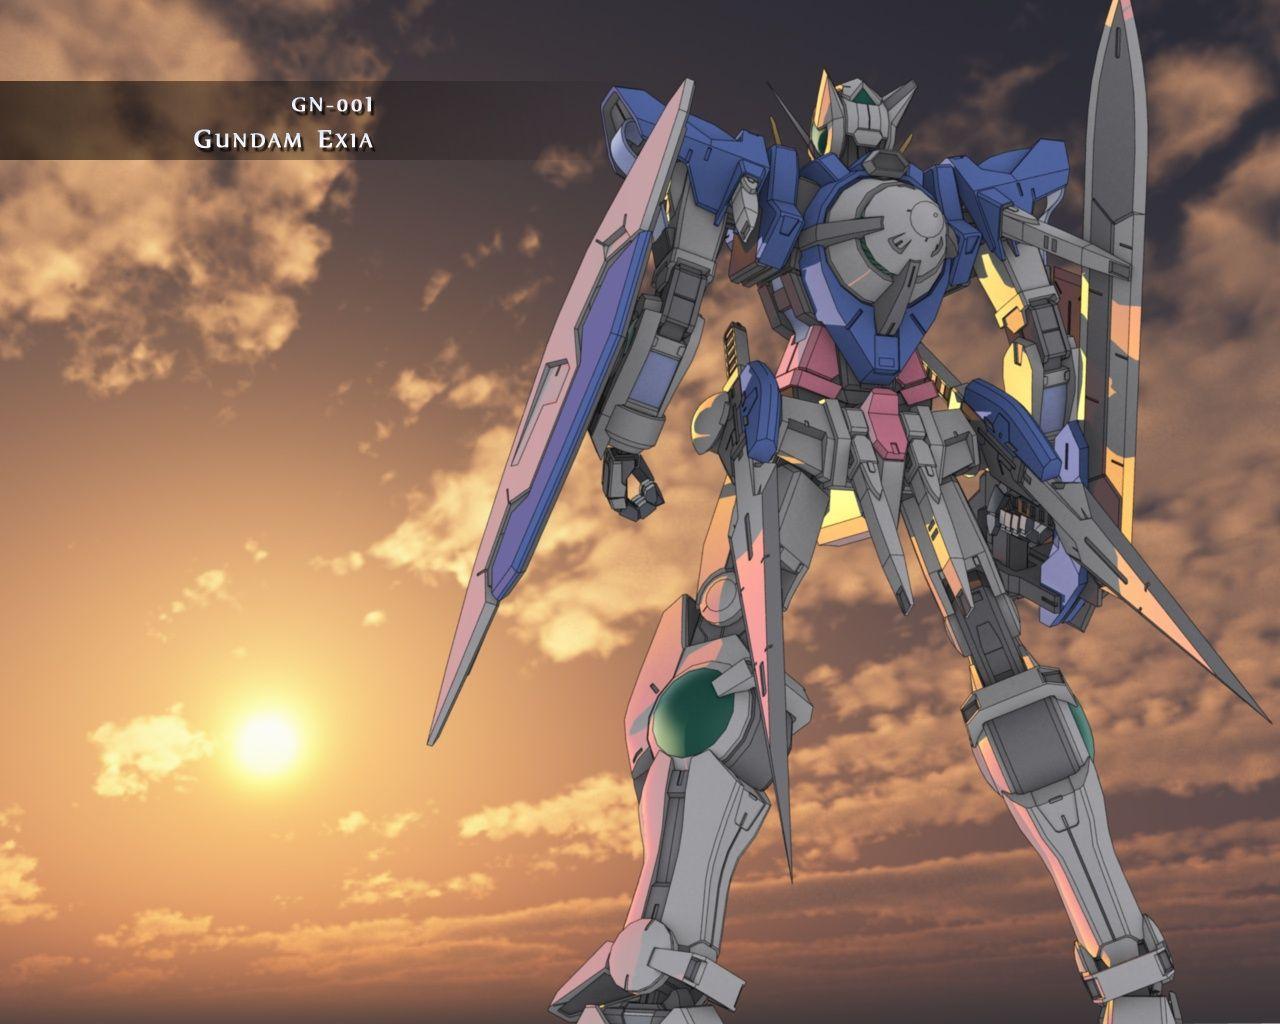 Download Gundam 00 Wallpaper 1280x1024